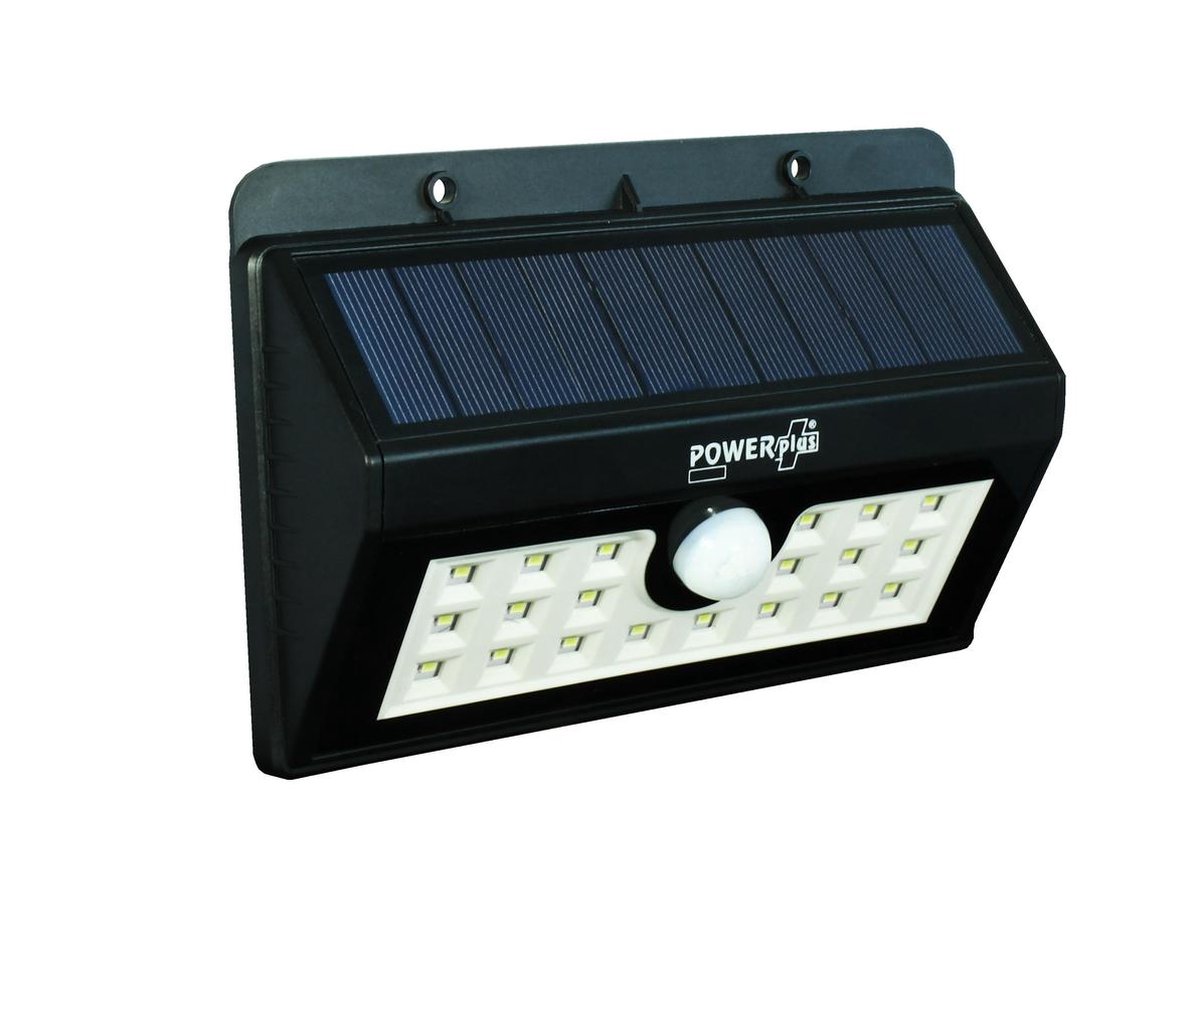 Ingang Verwacht het Anekdote POWERplus Boa Solar Buitenverlichting 20 LED | Oplaadbaar via zon en USB |  Zwart | bol.com